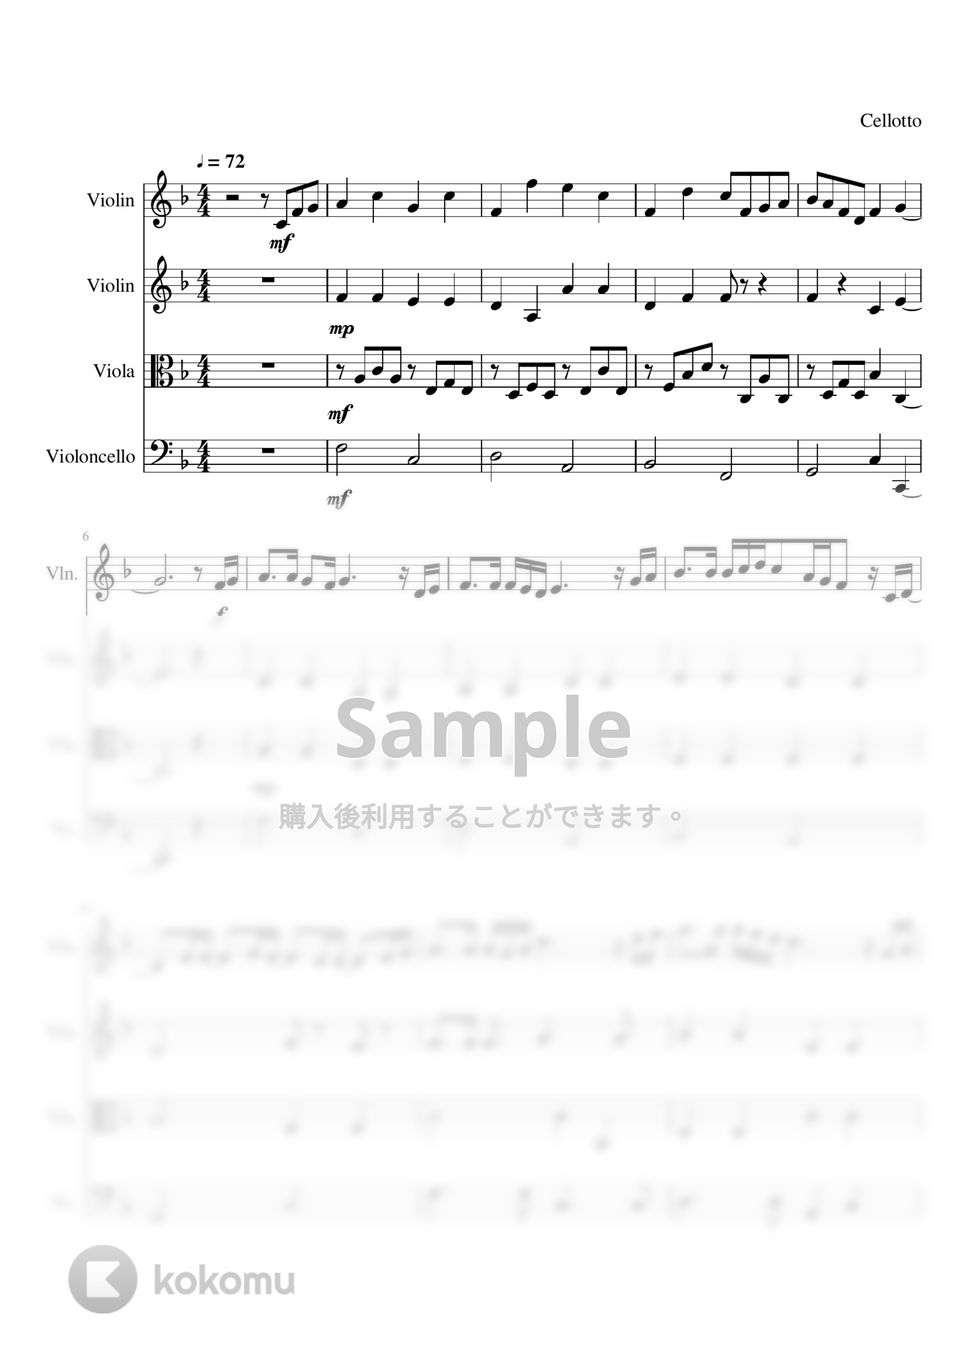 菅田将暉 - 虹 (弦楽四重奏) by Cellotto